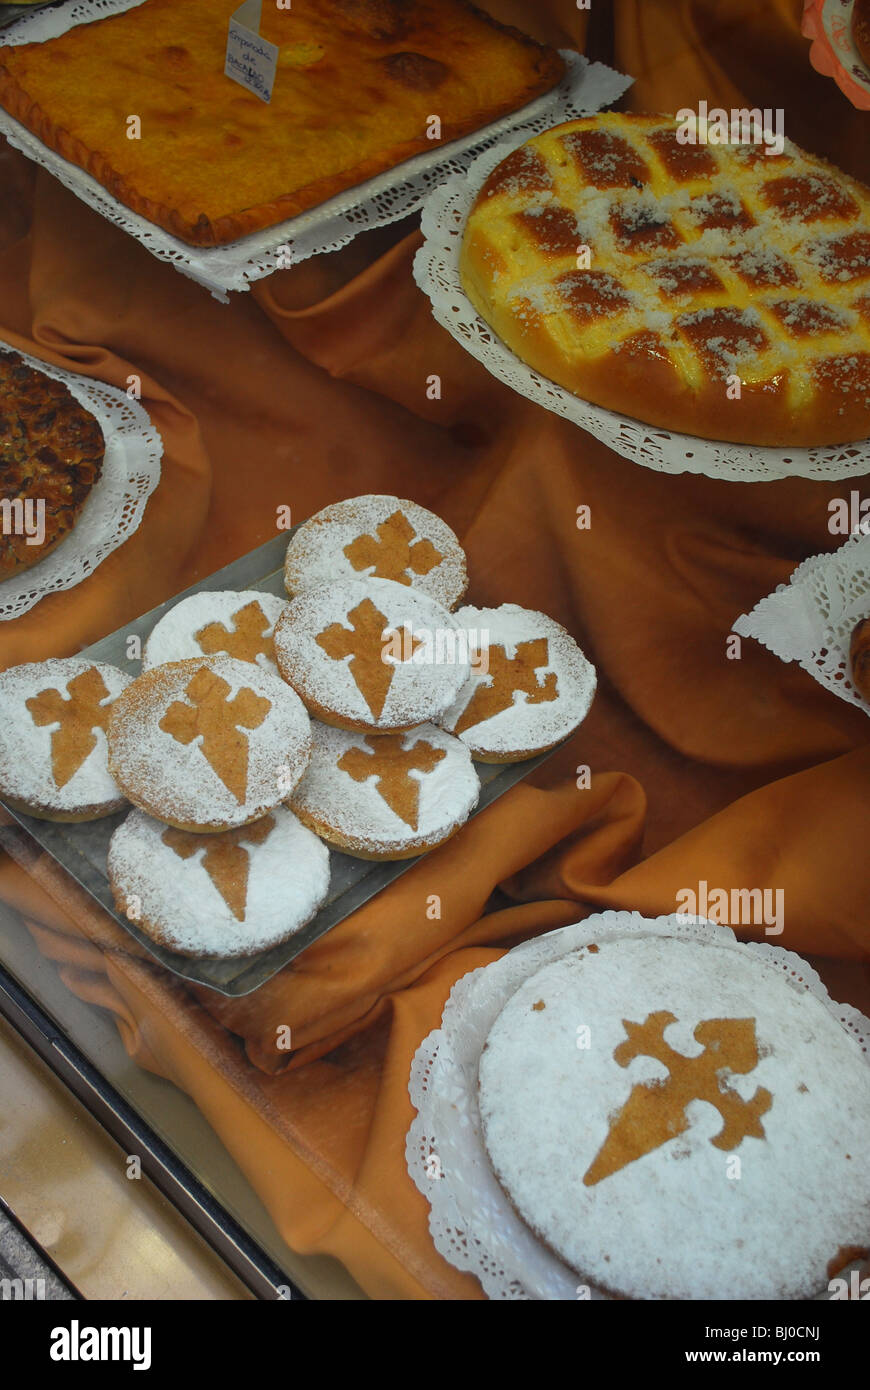 Tarta de Santiago ou gâteaux aux amandes avec croix de St Jacques et autres sucreries dans la fenêtre à Santiago de Compostela, Espagne Banque D'Images